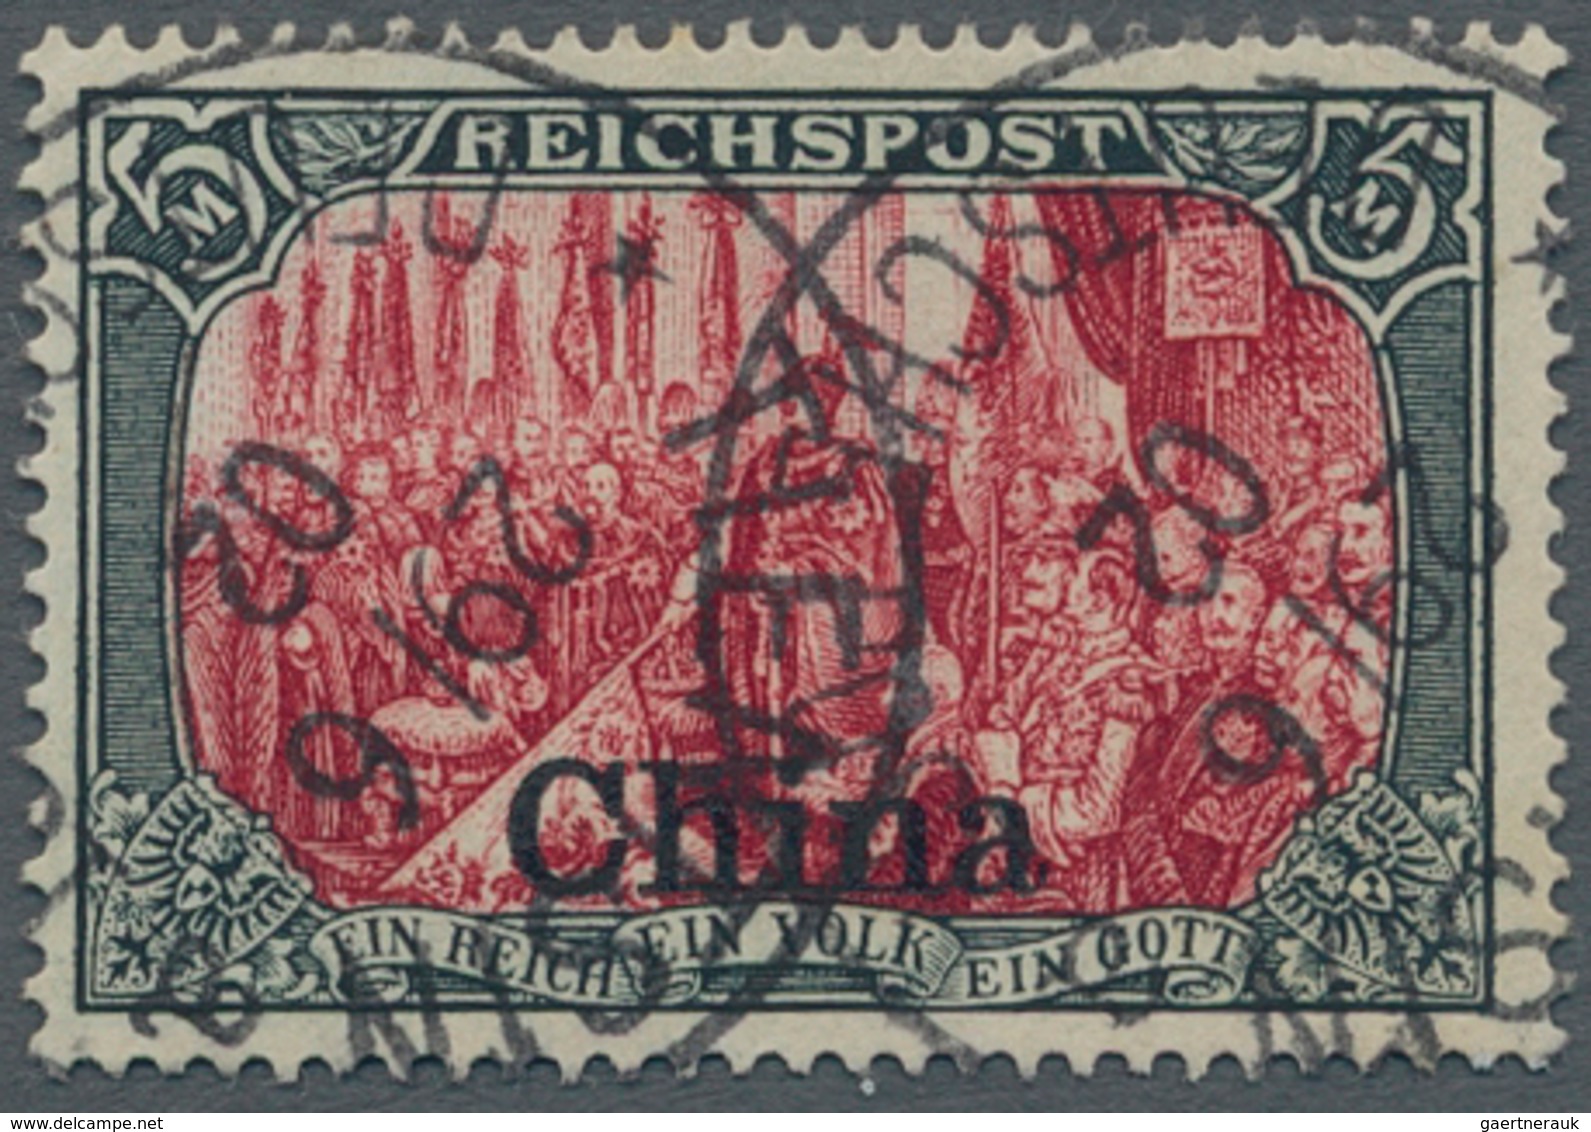 Deutsche Post In China: 1901, 5 Mark Reichspost Aufdruckwert Type III, Sauber Gestempelt Und Fehlerf - Deutsche Post In China